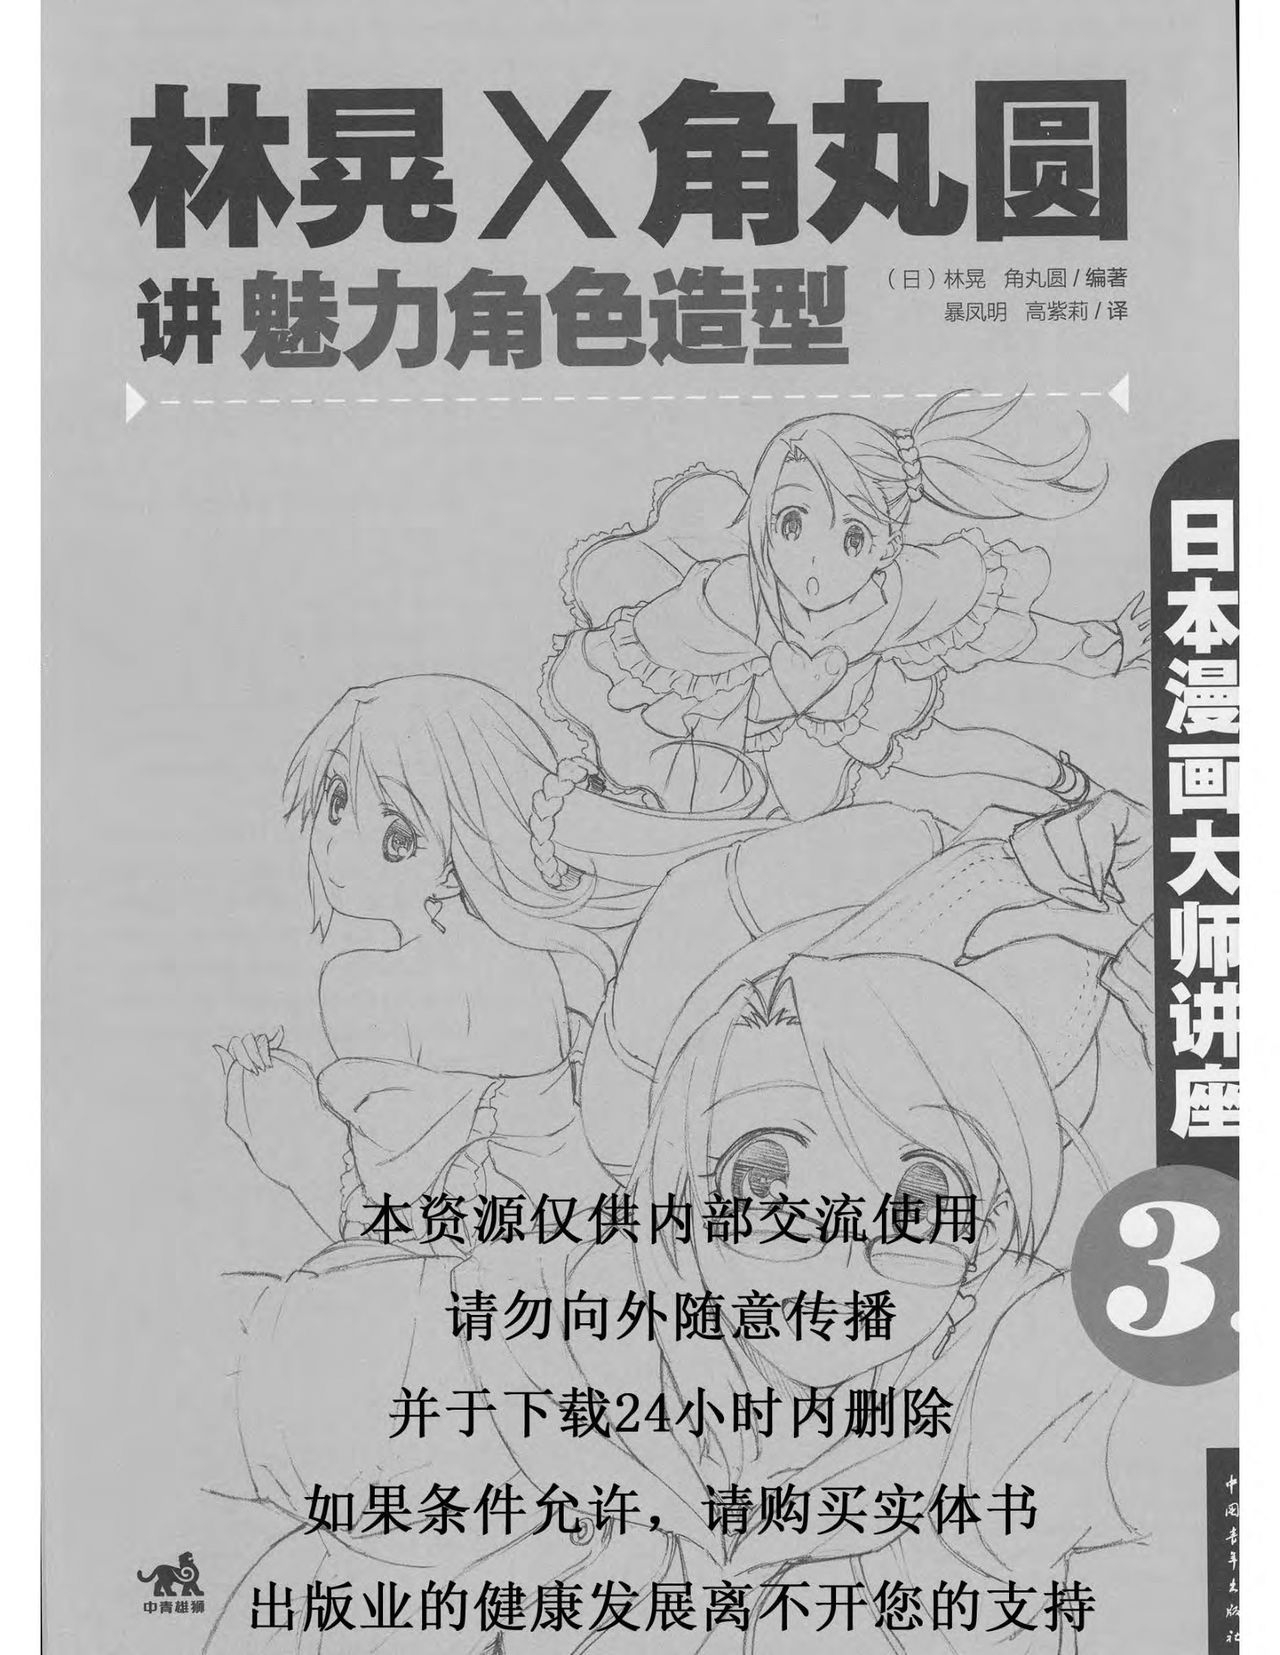 Japanese Manga Master Lecture 3: Lin Akira and Kakumaru Maru Talk About Glamorous Character Modeling 1